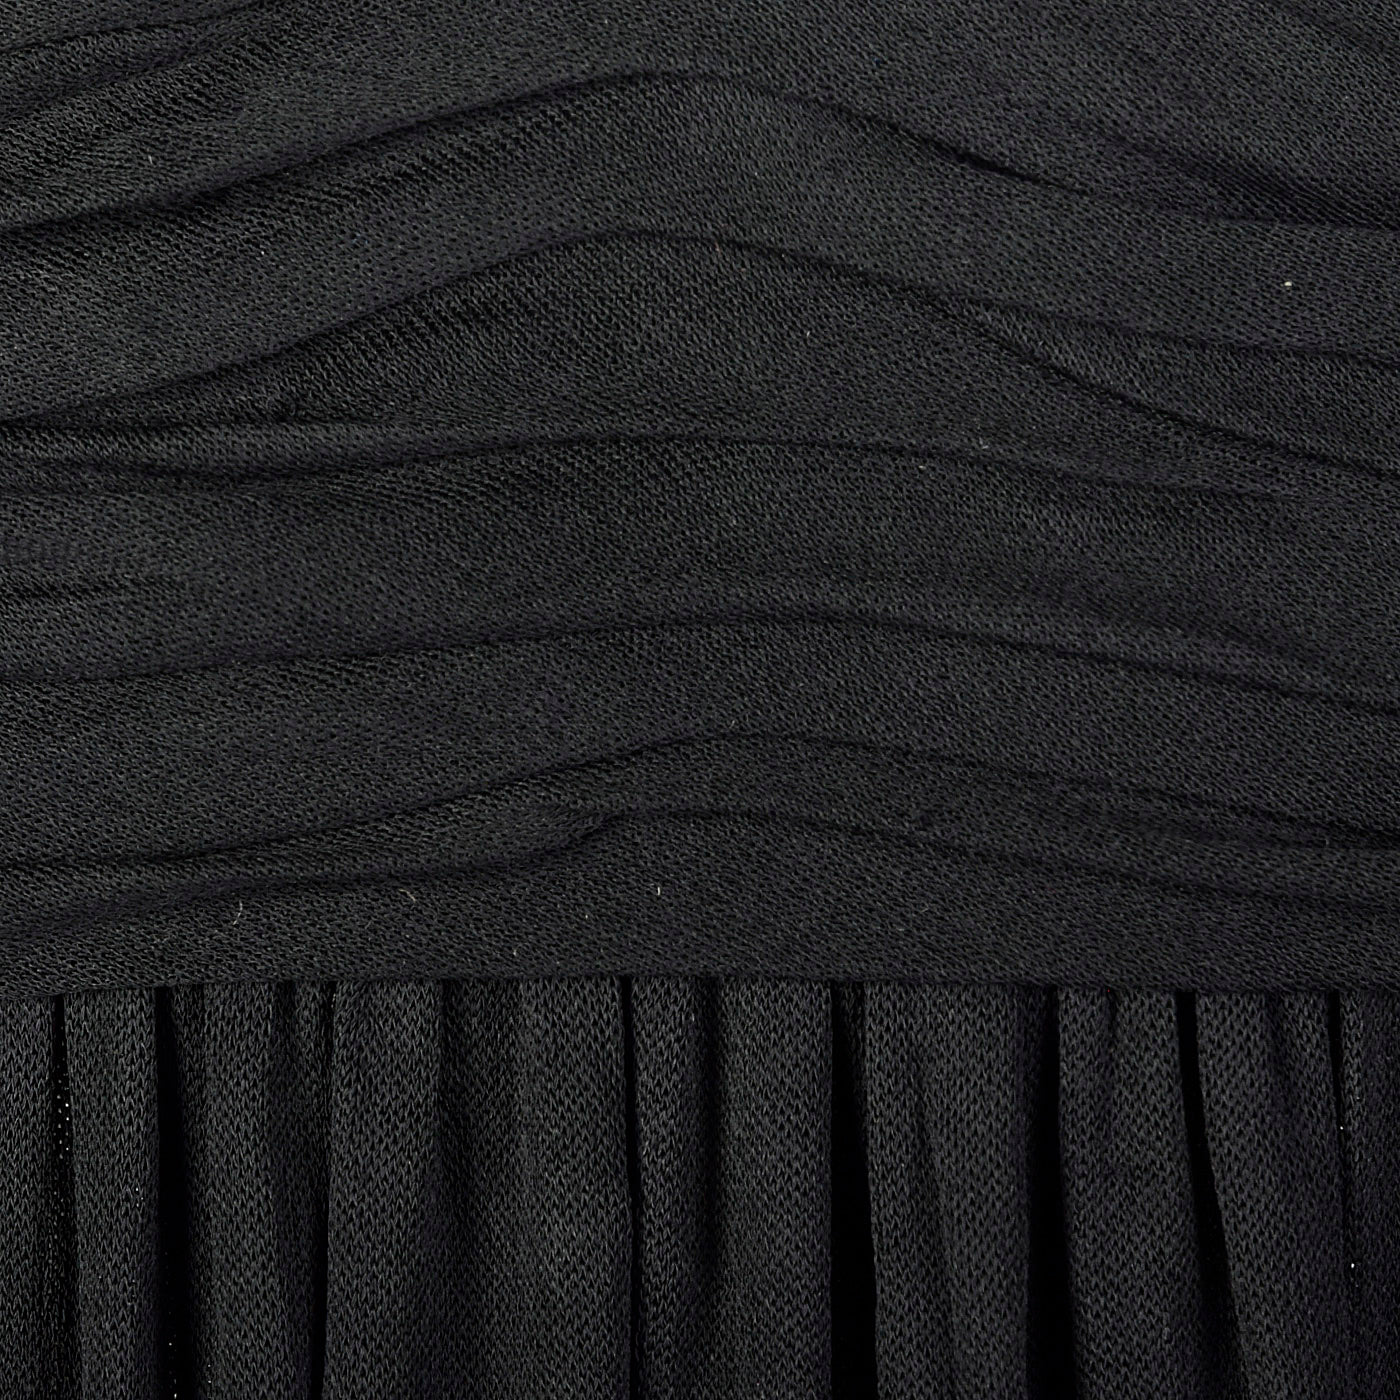 1970s Black Jersey Knit Maxi Dress